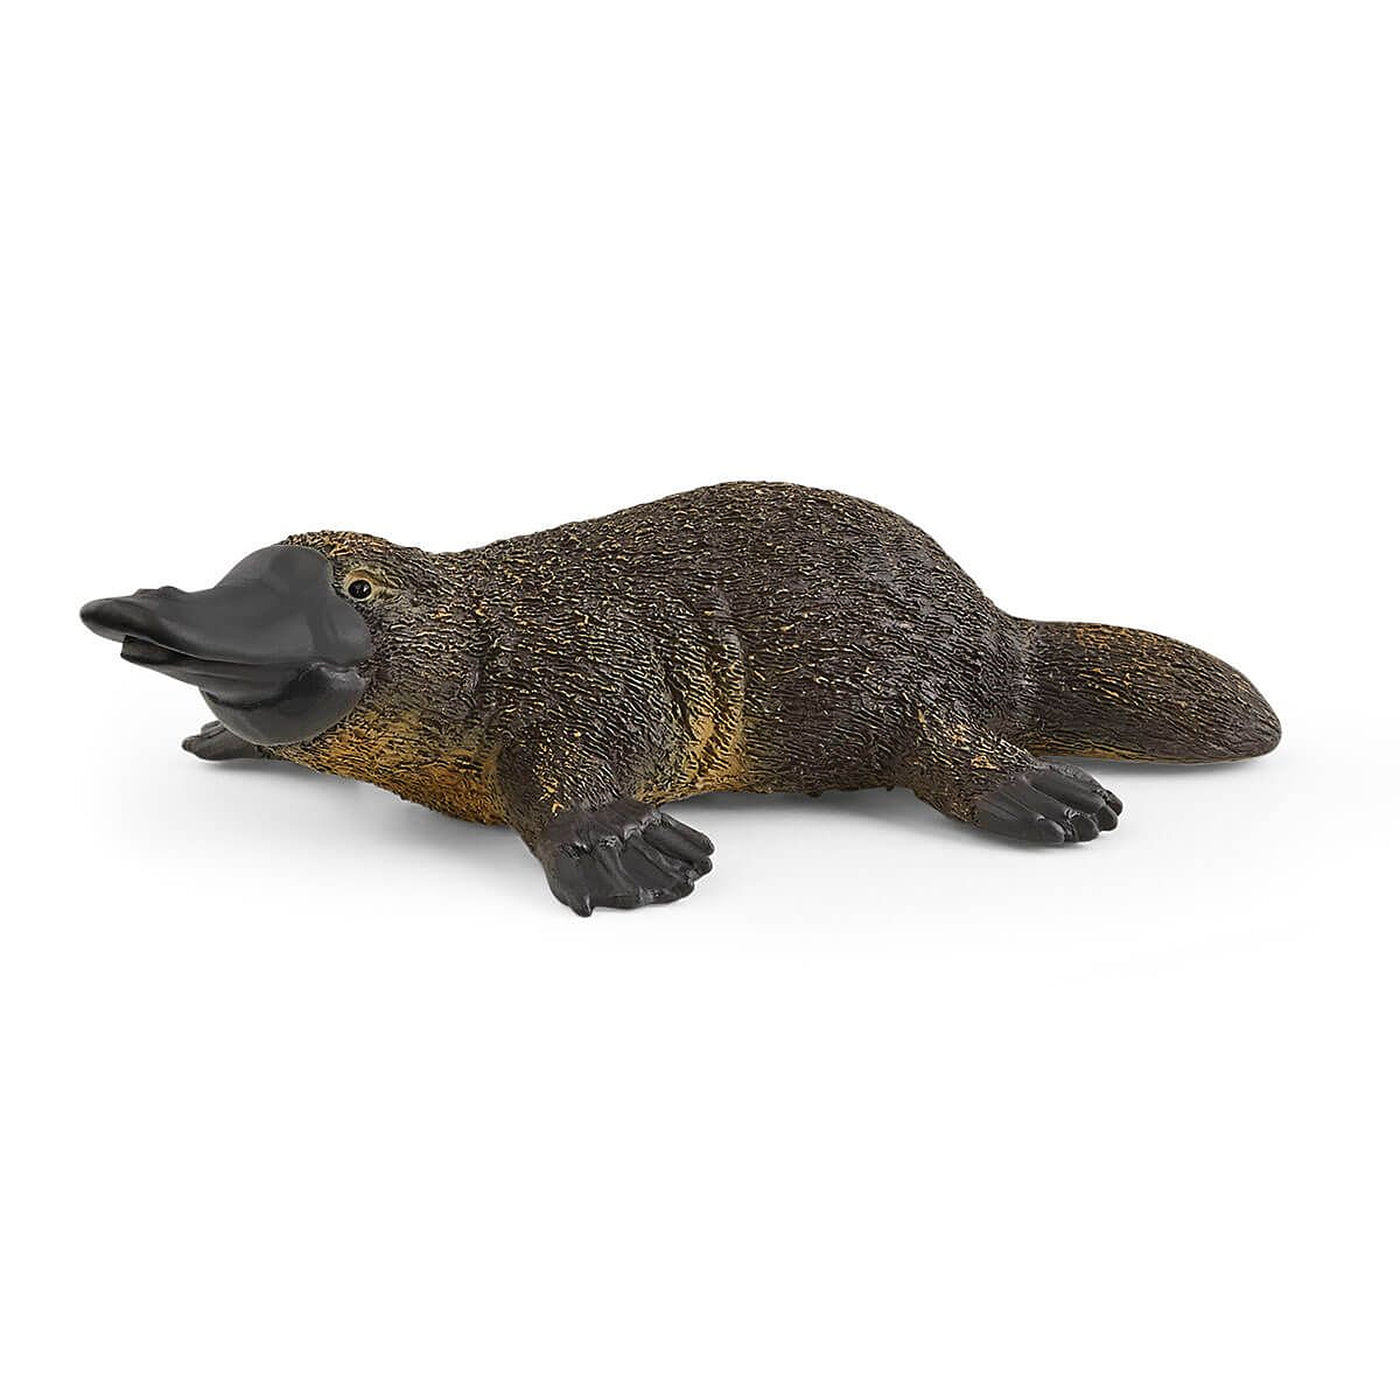 Schleich Wild Life Platypus Toy Figurine